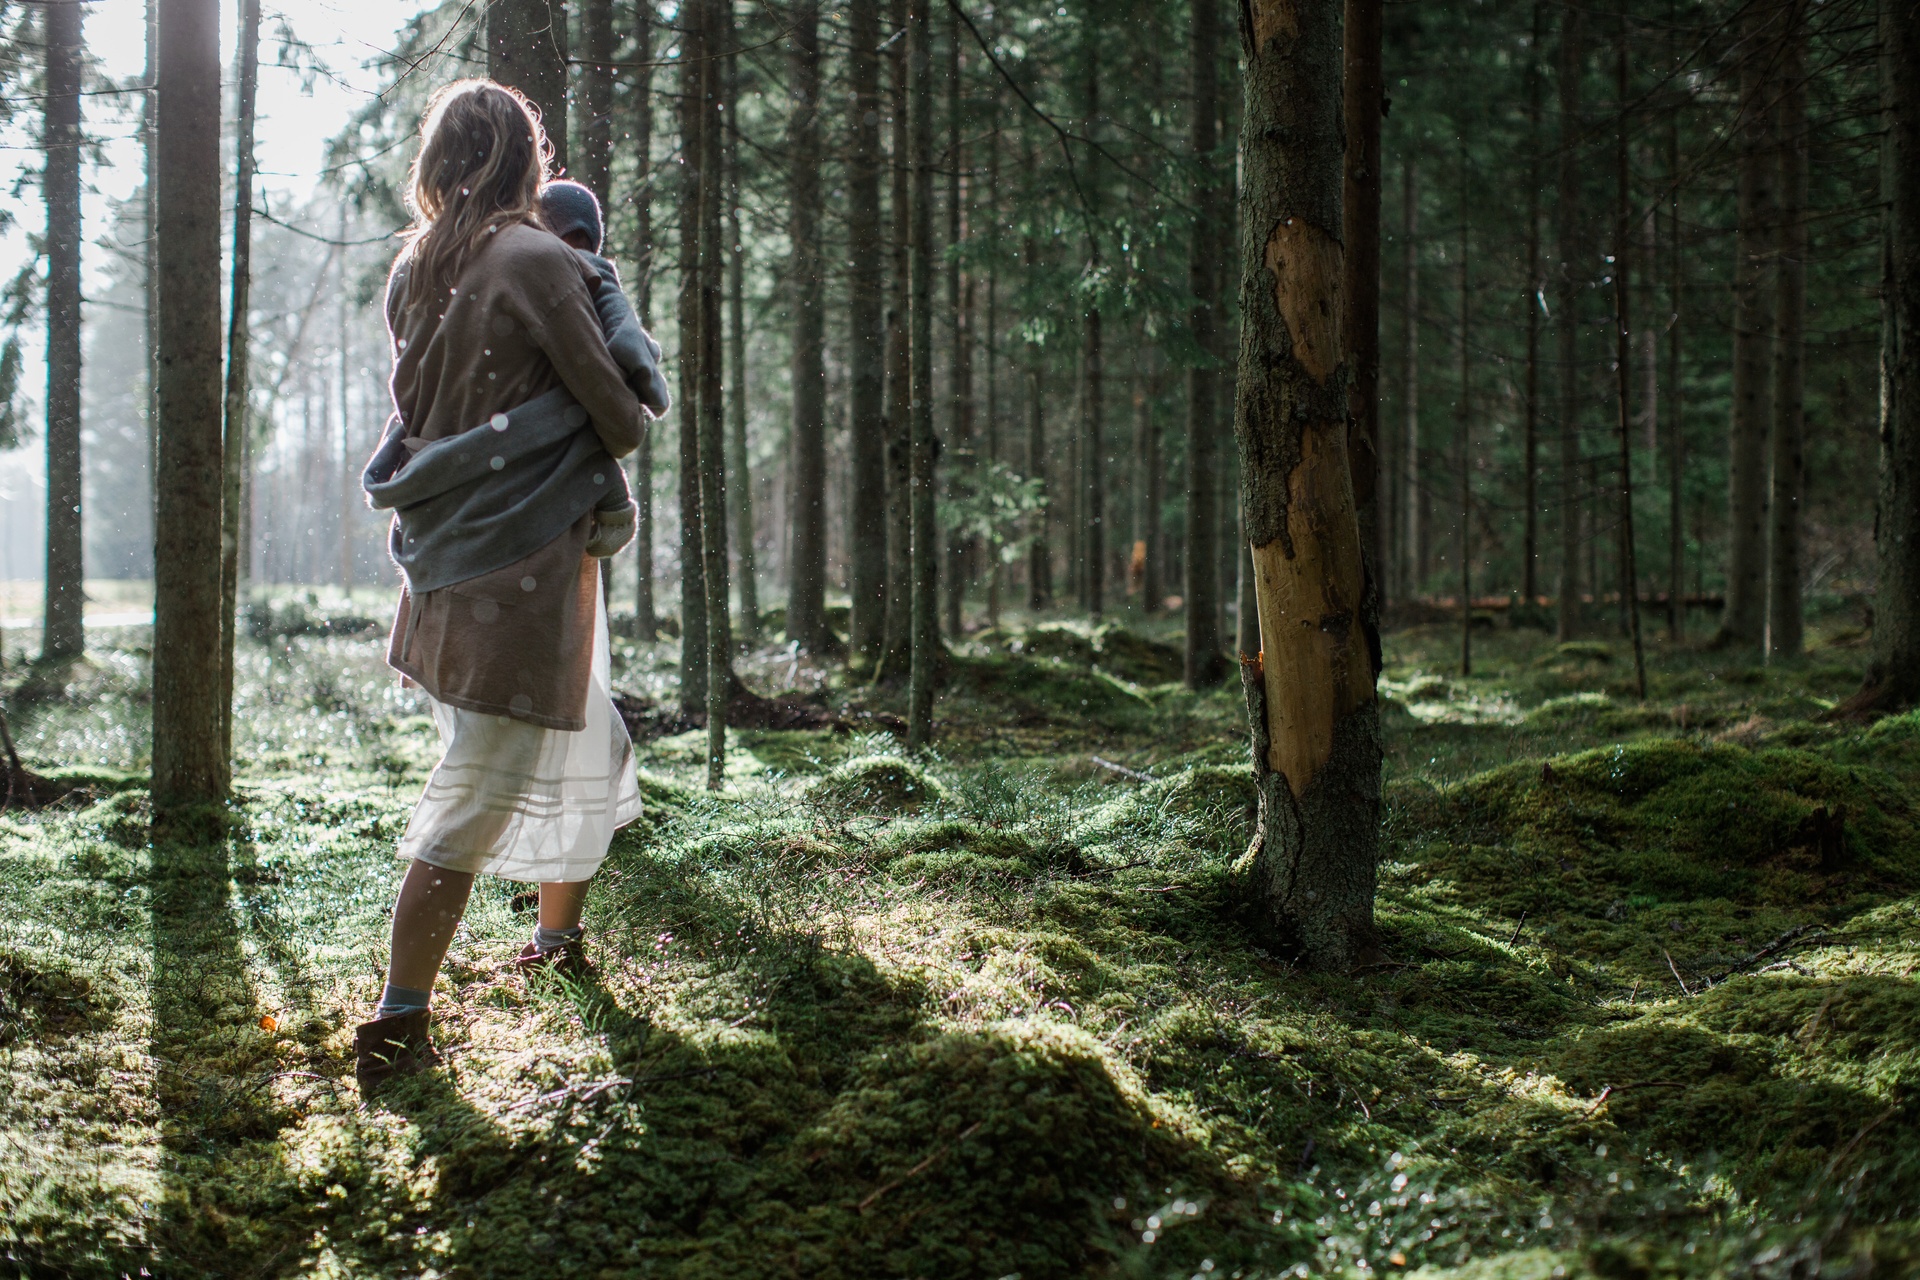 Frau geht im Wald spazieren